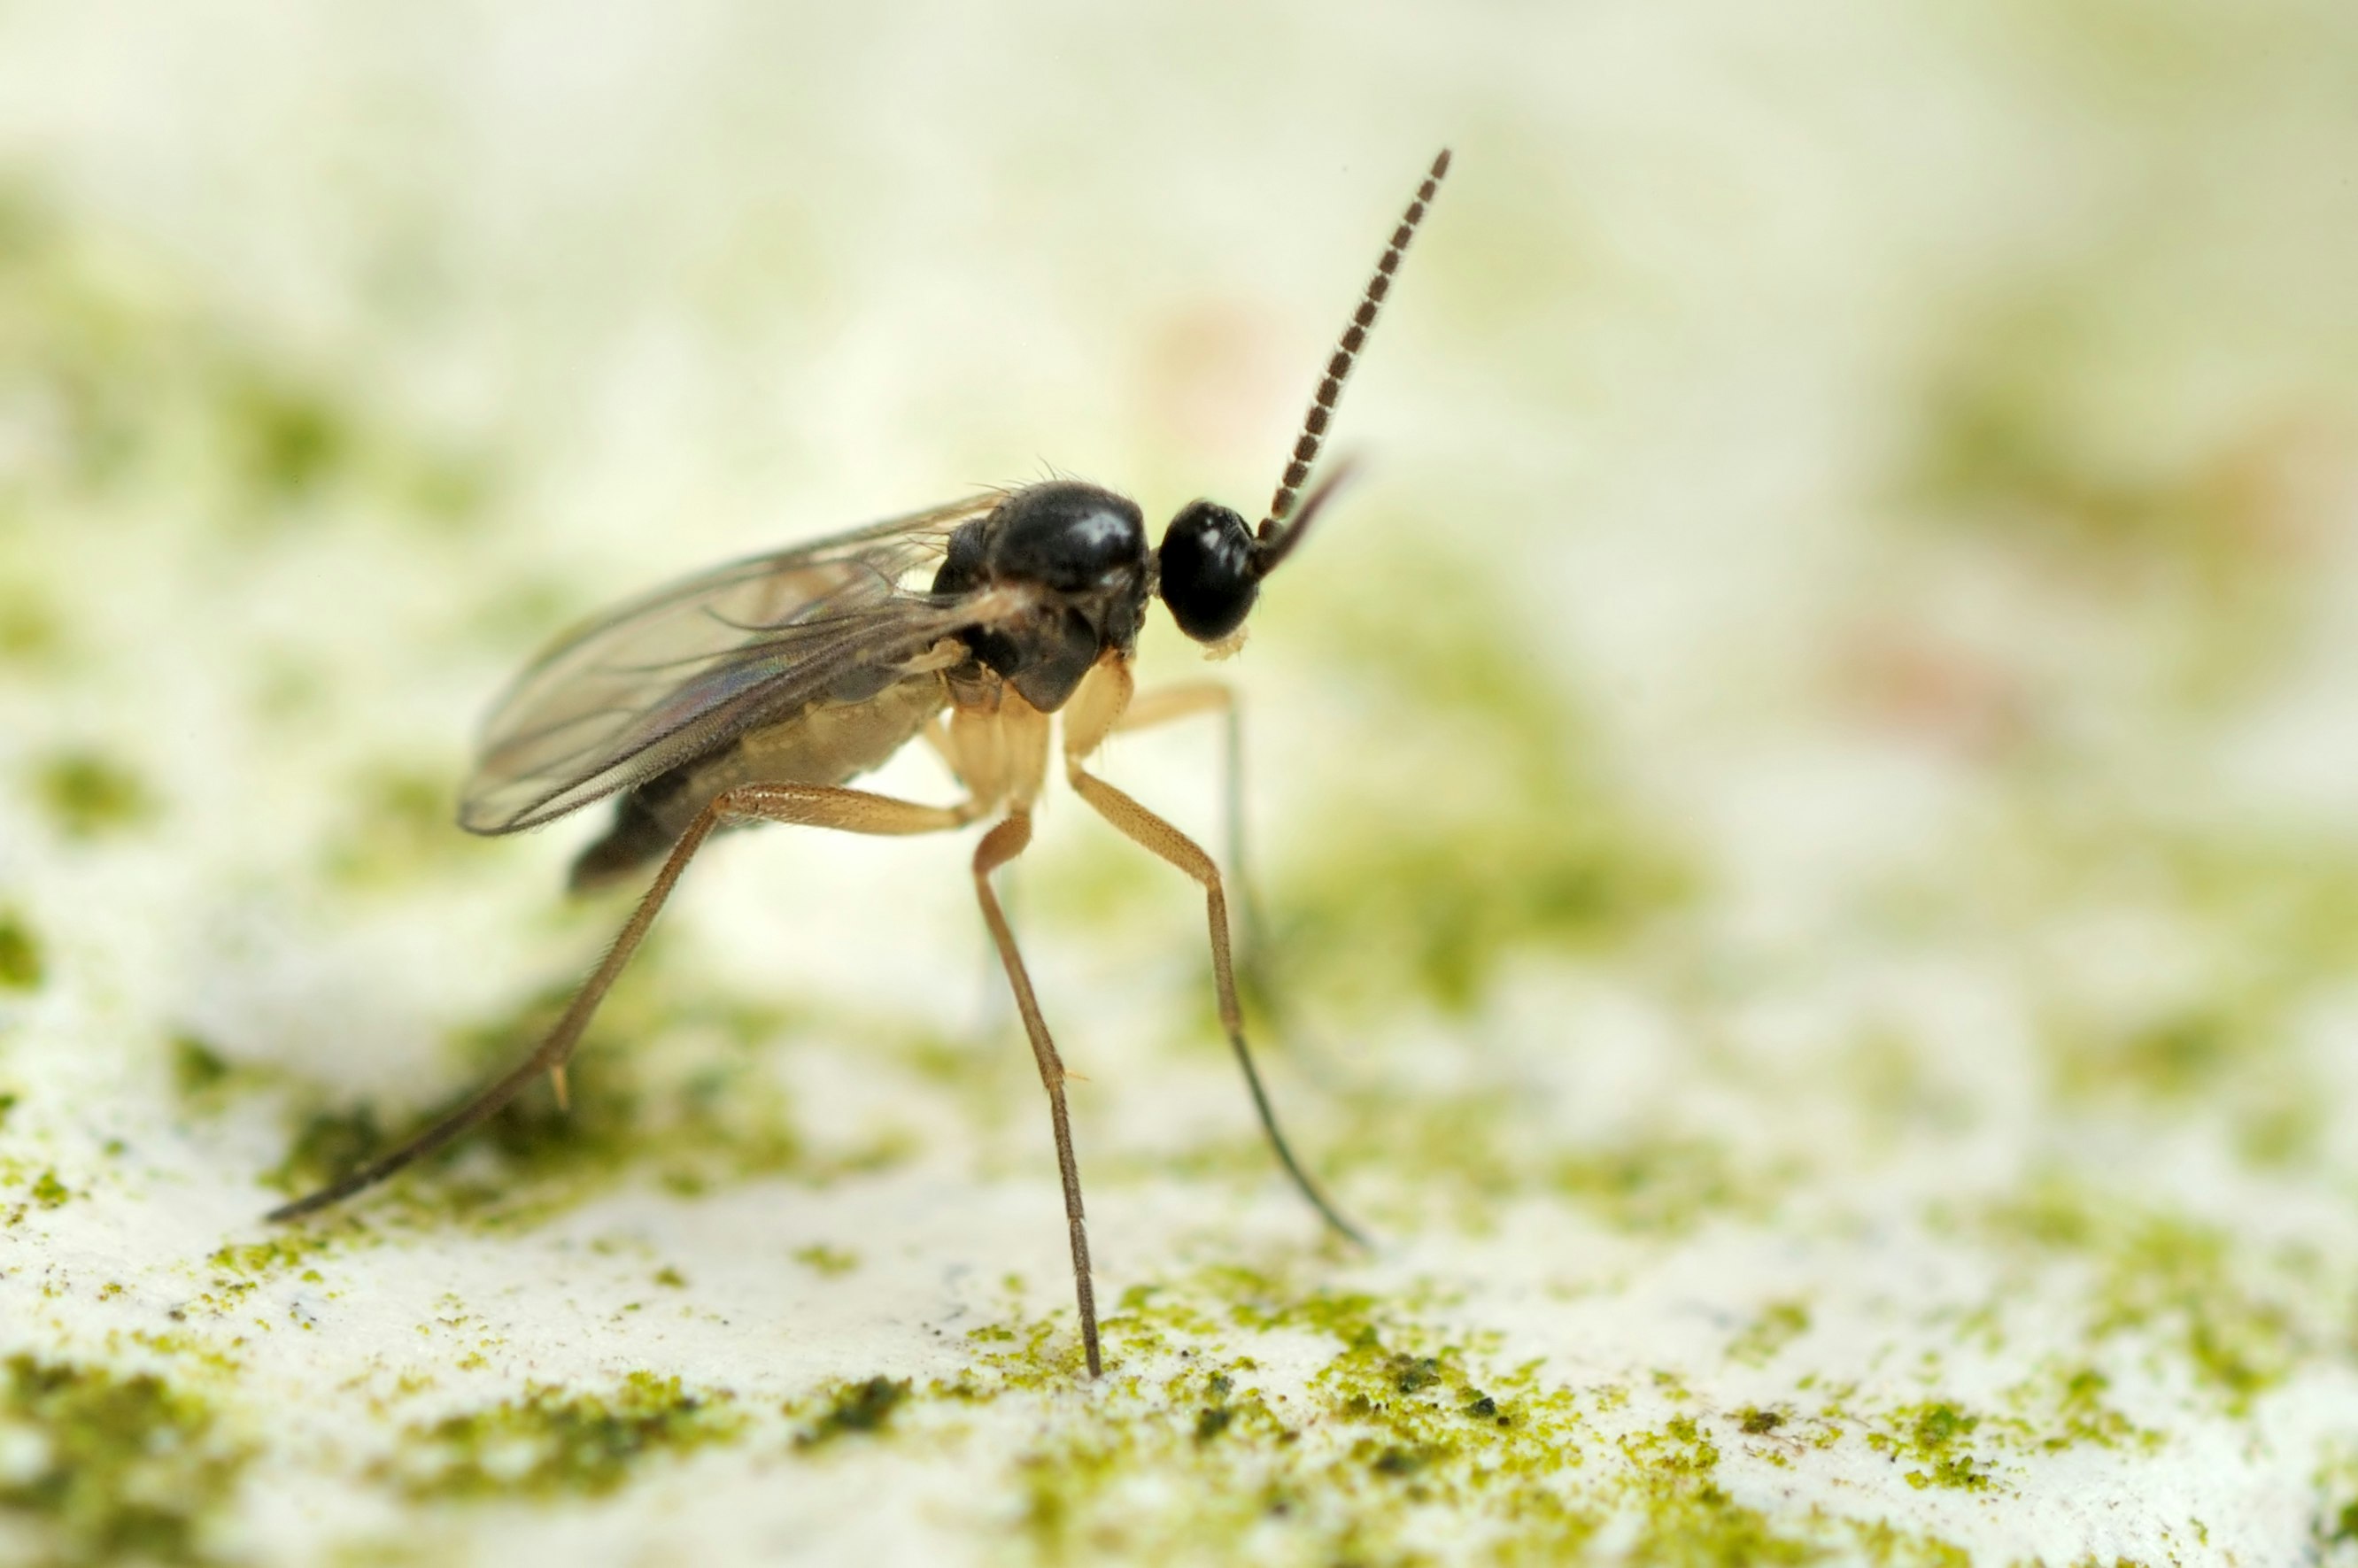 Sørgemyg ligner en blanding af en flue og en myg